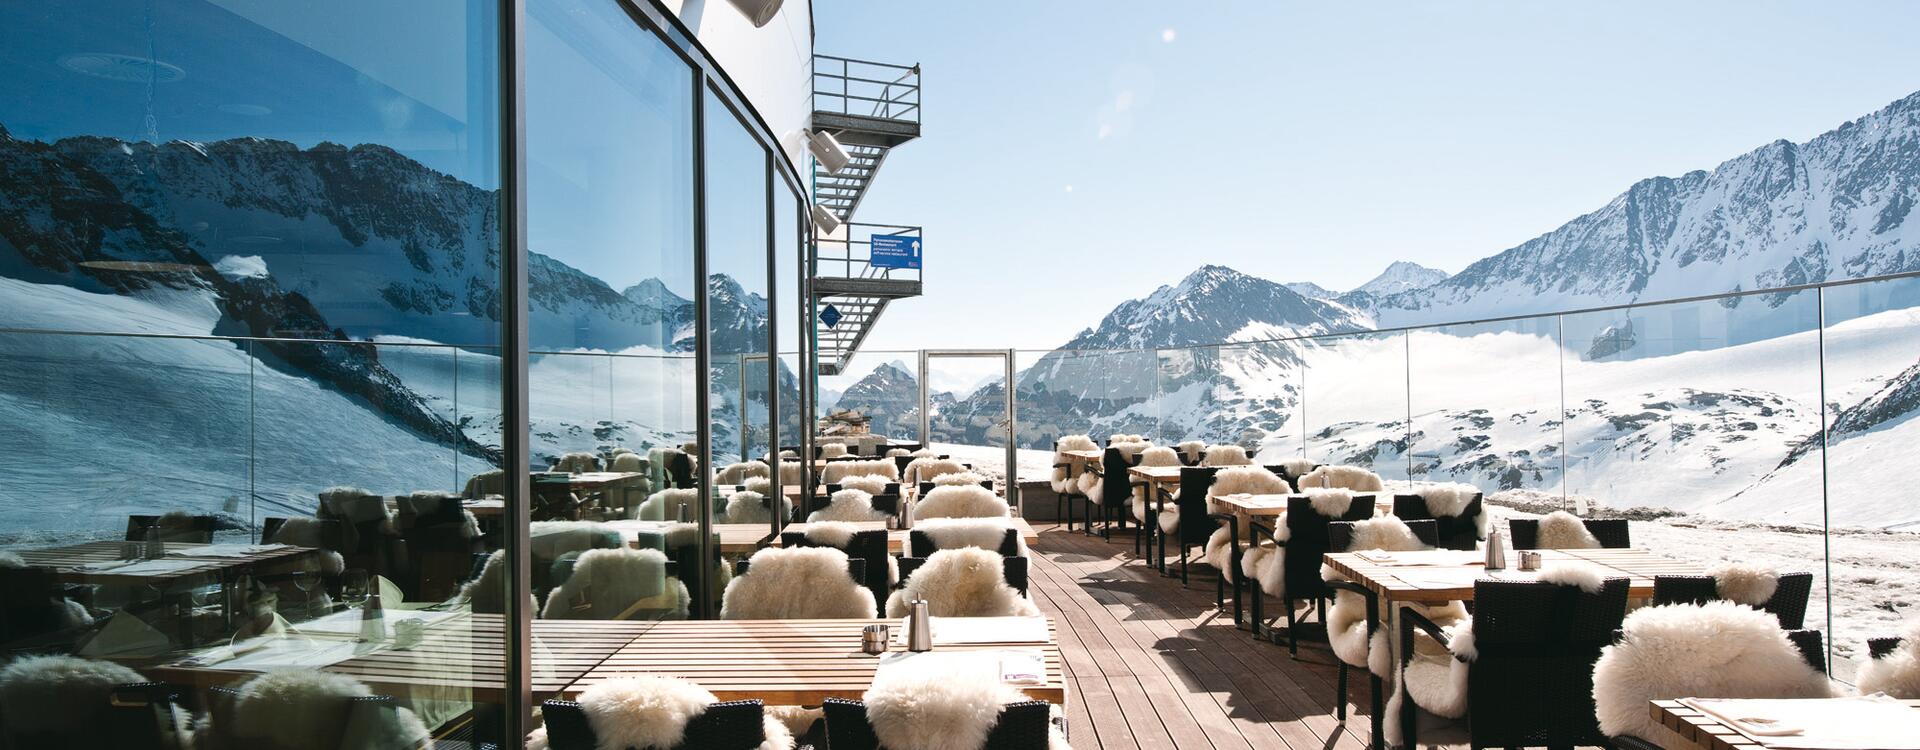 Restaurant am Stubaier Gletscher